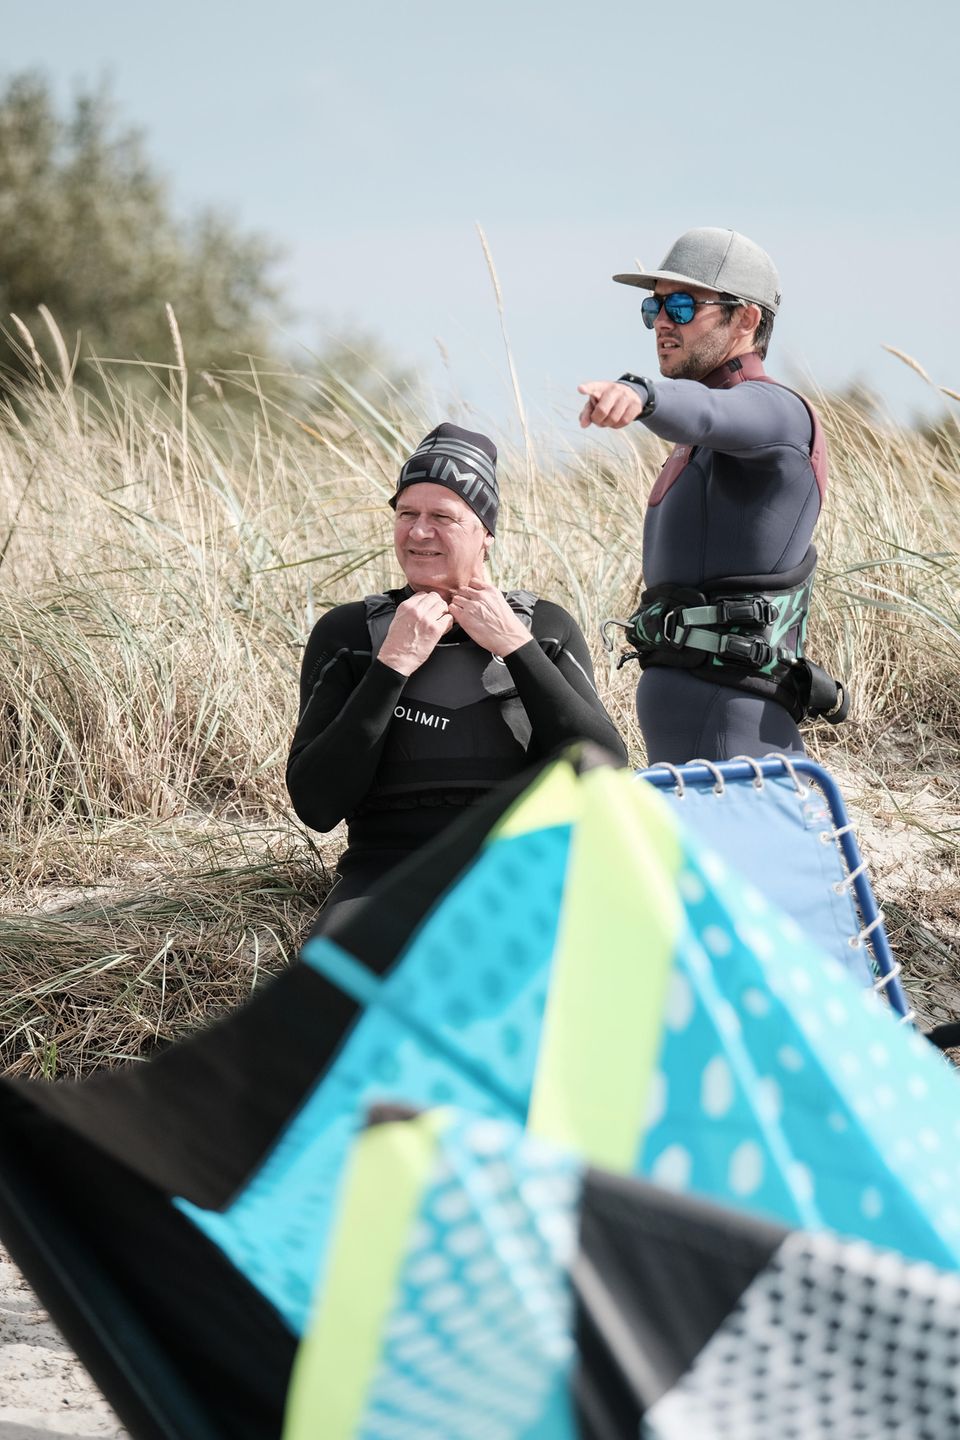 Neue Passion: Vor Fehmarn lernt Grundmann Kite-Surfen 